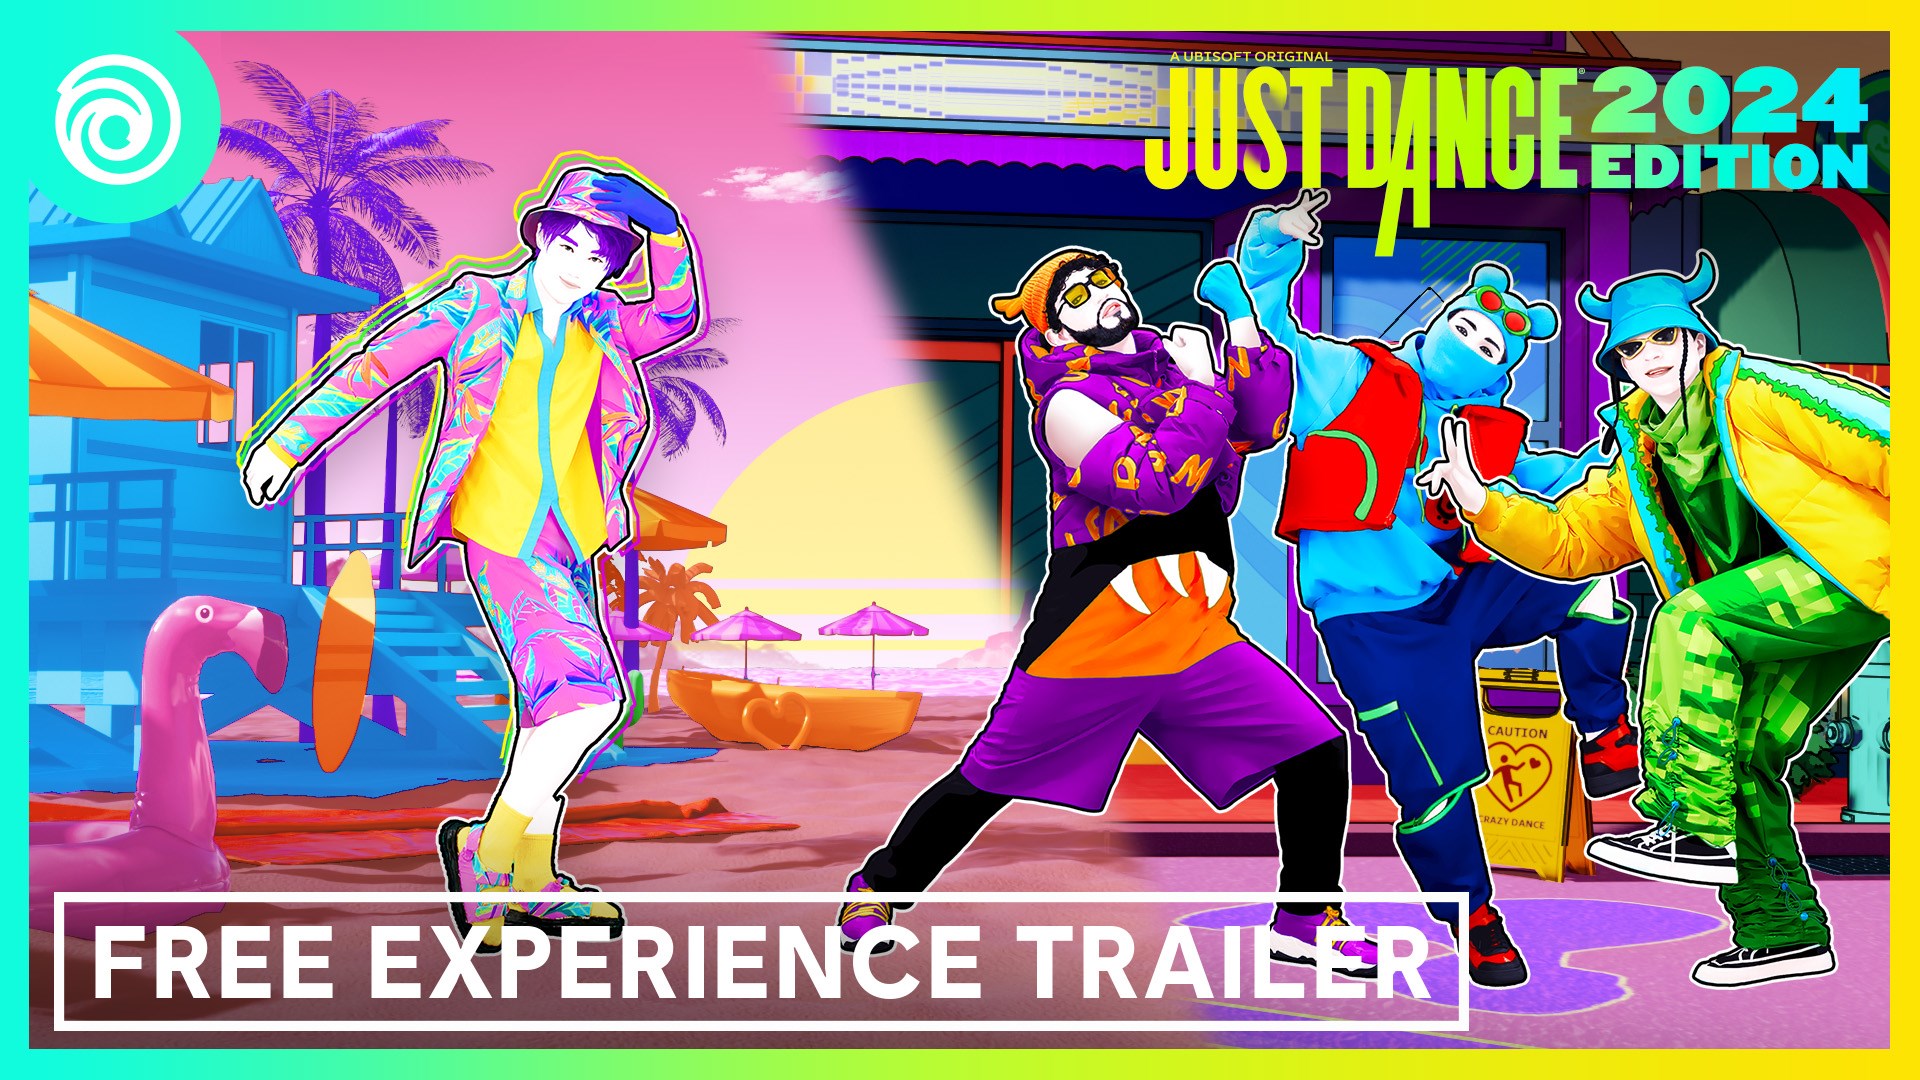 Just Dance 2023 renovará la serie en noviembre y dejará atrás PS4 y Xbox  One - Vandal